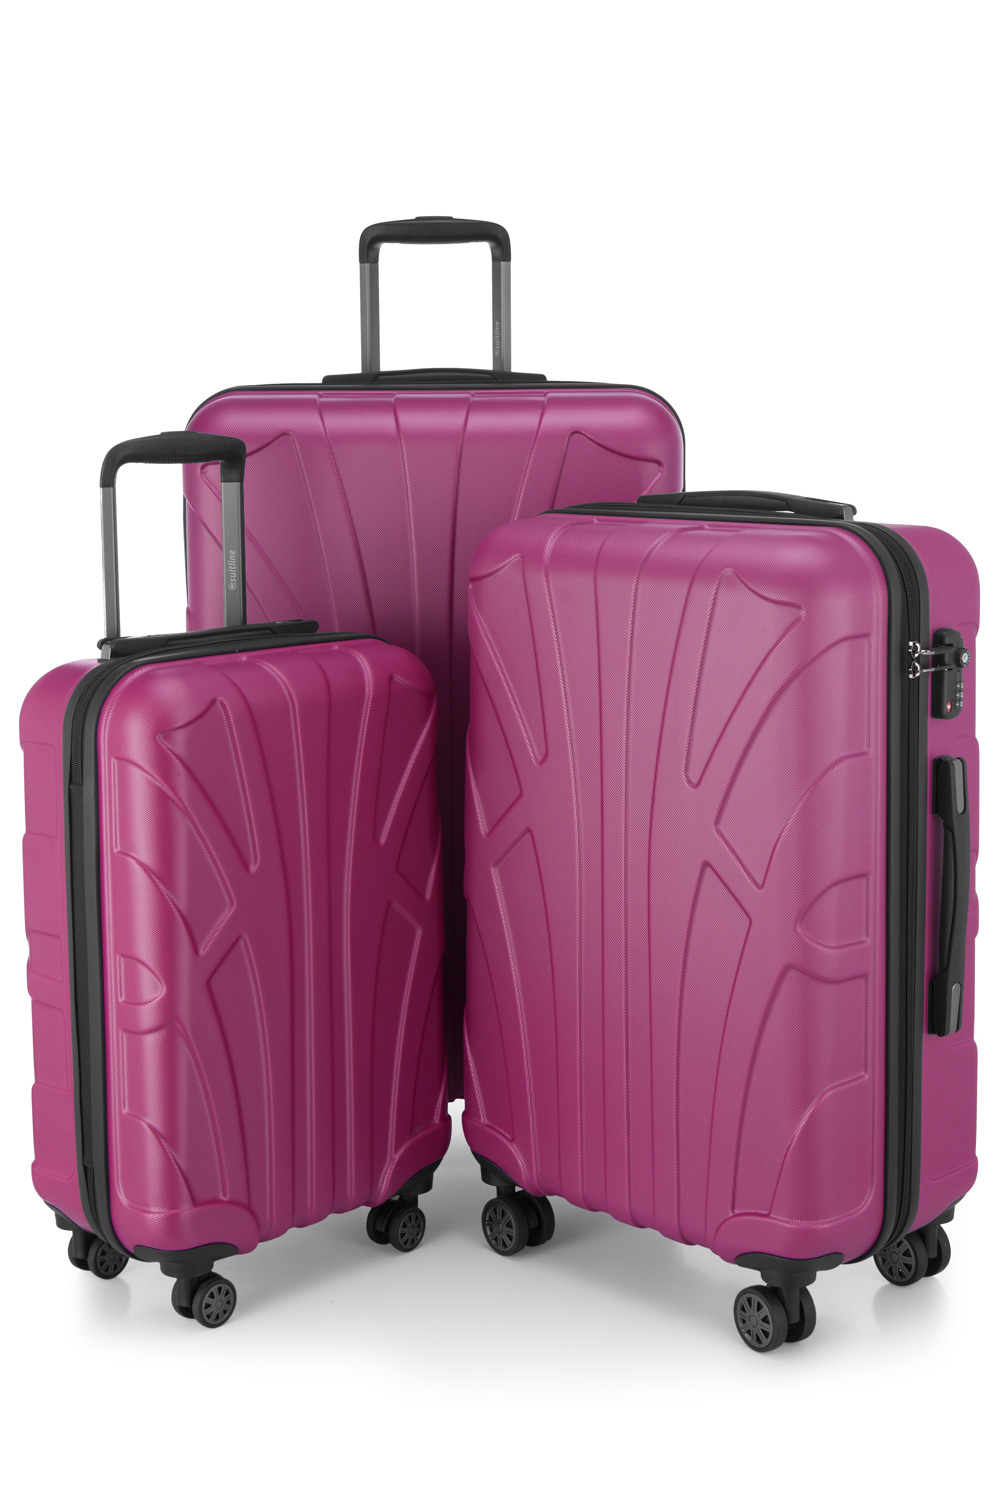 Kofferset 3 teilig, Hartschale ABS, Koffergrößen S/M/L, TSA-Zahlenschloss -  Magenta